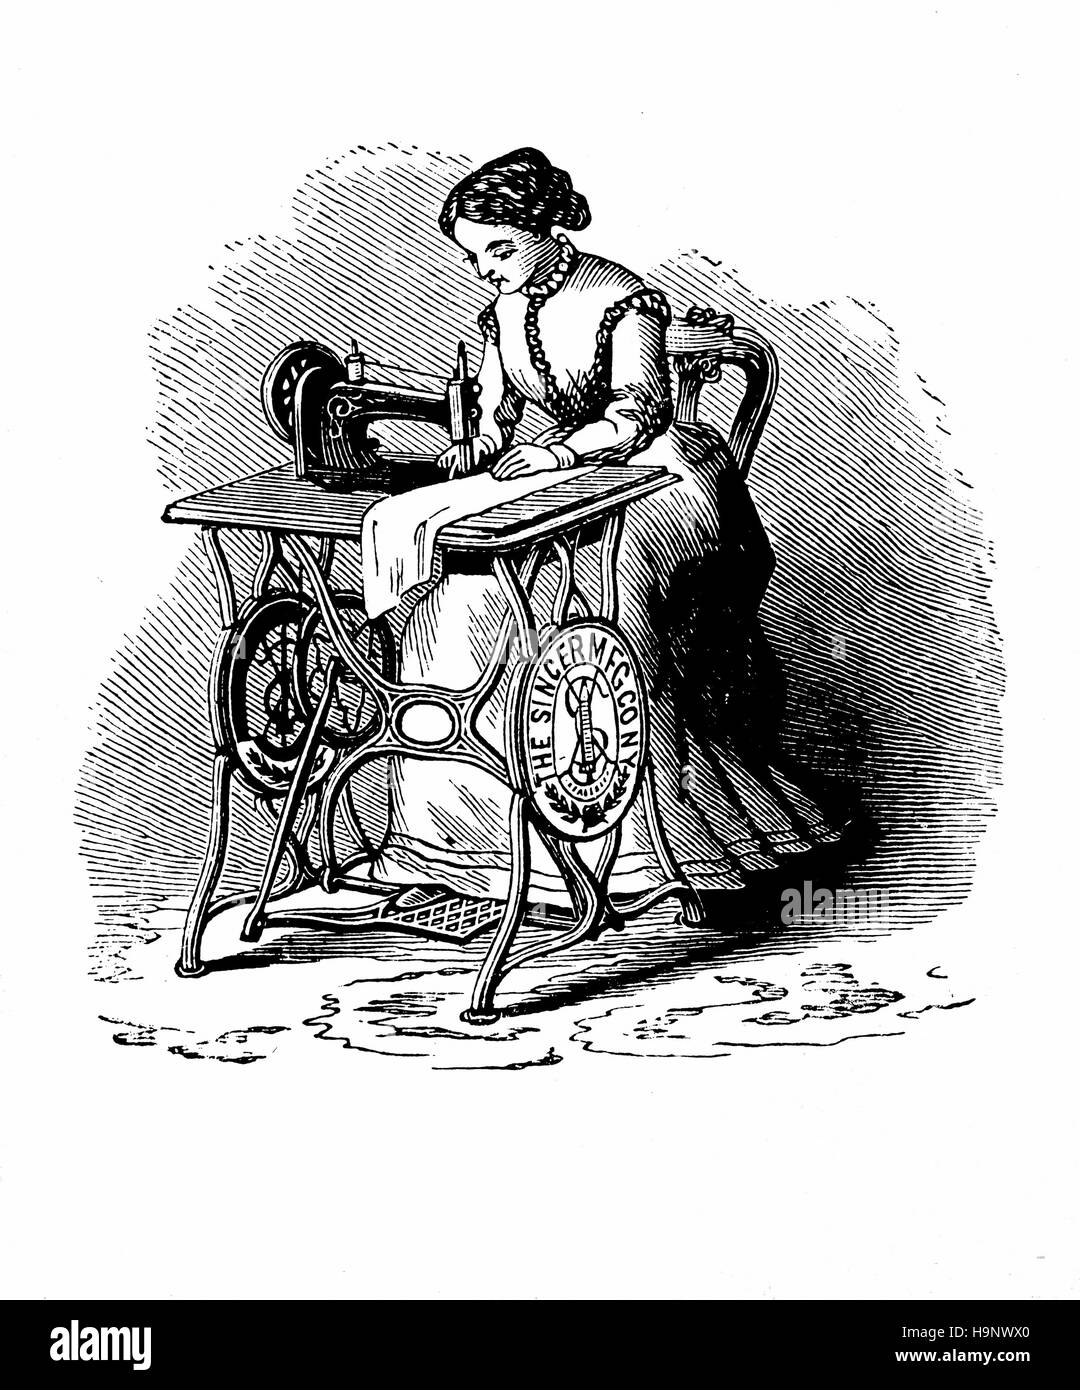 Machine à coudre par Isaac Merritt Singer - XIX e siècle - gravure américaine Banque D'Images